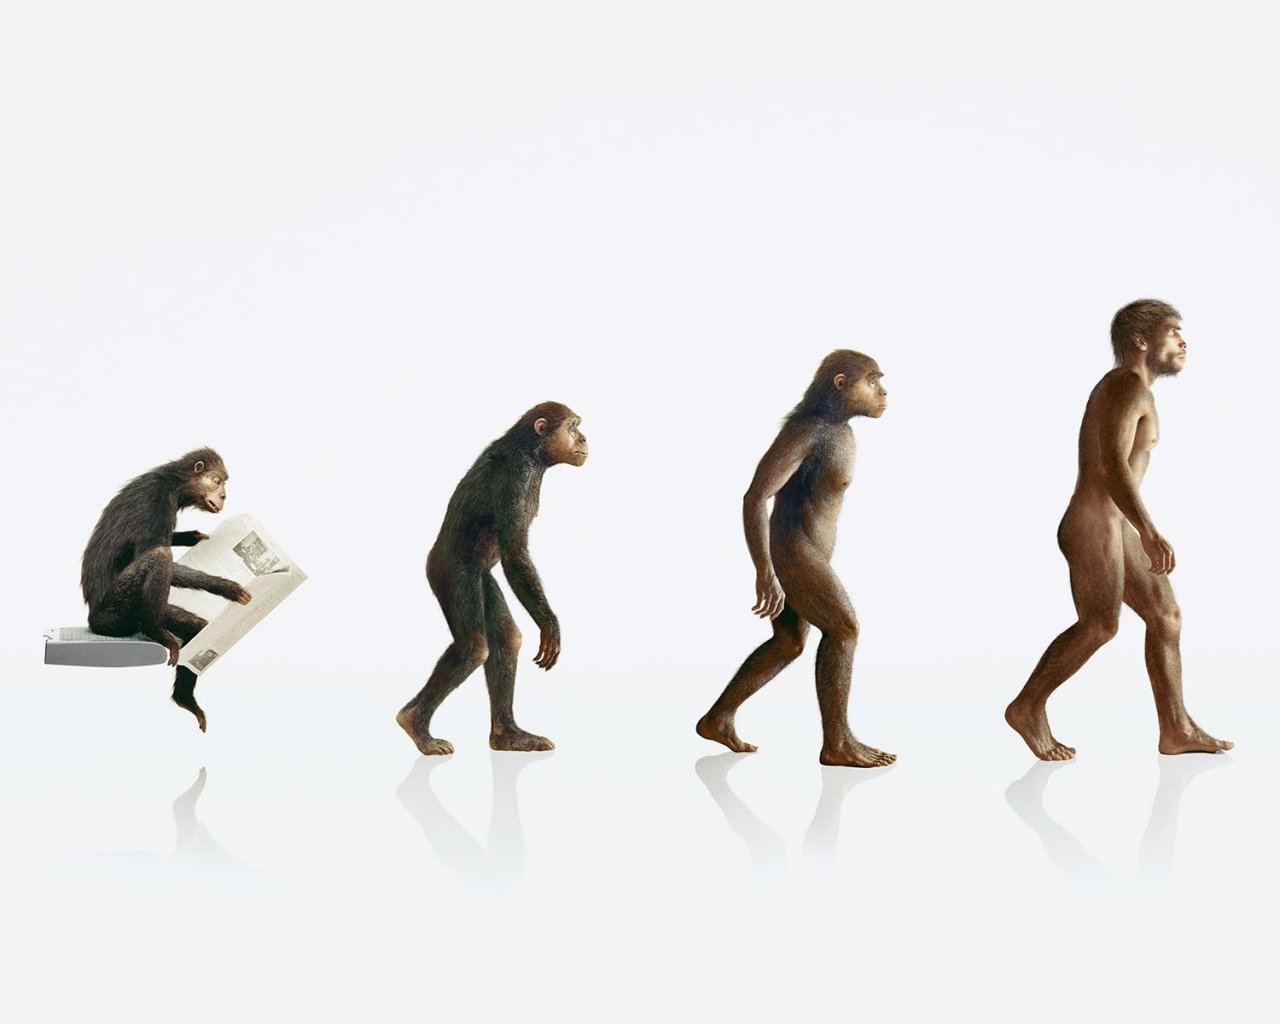  human evolution apes 1920x1200 wallpaper Art HD Wallpaper download